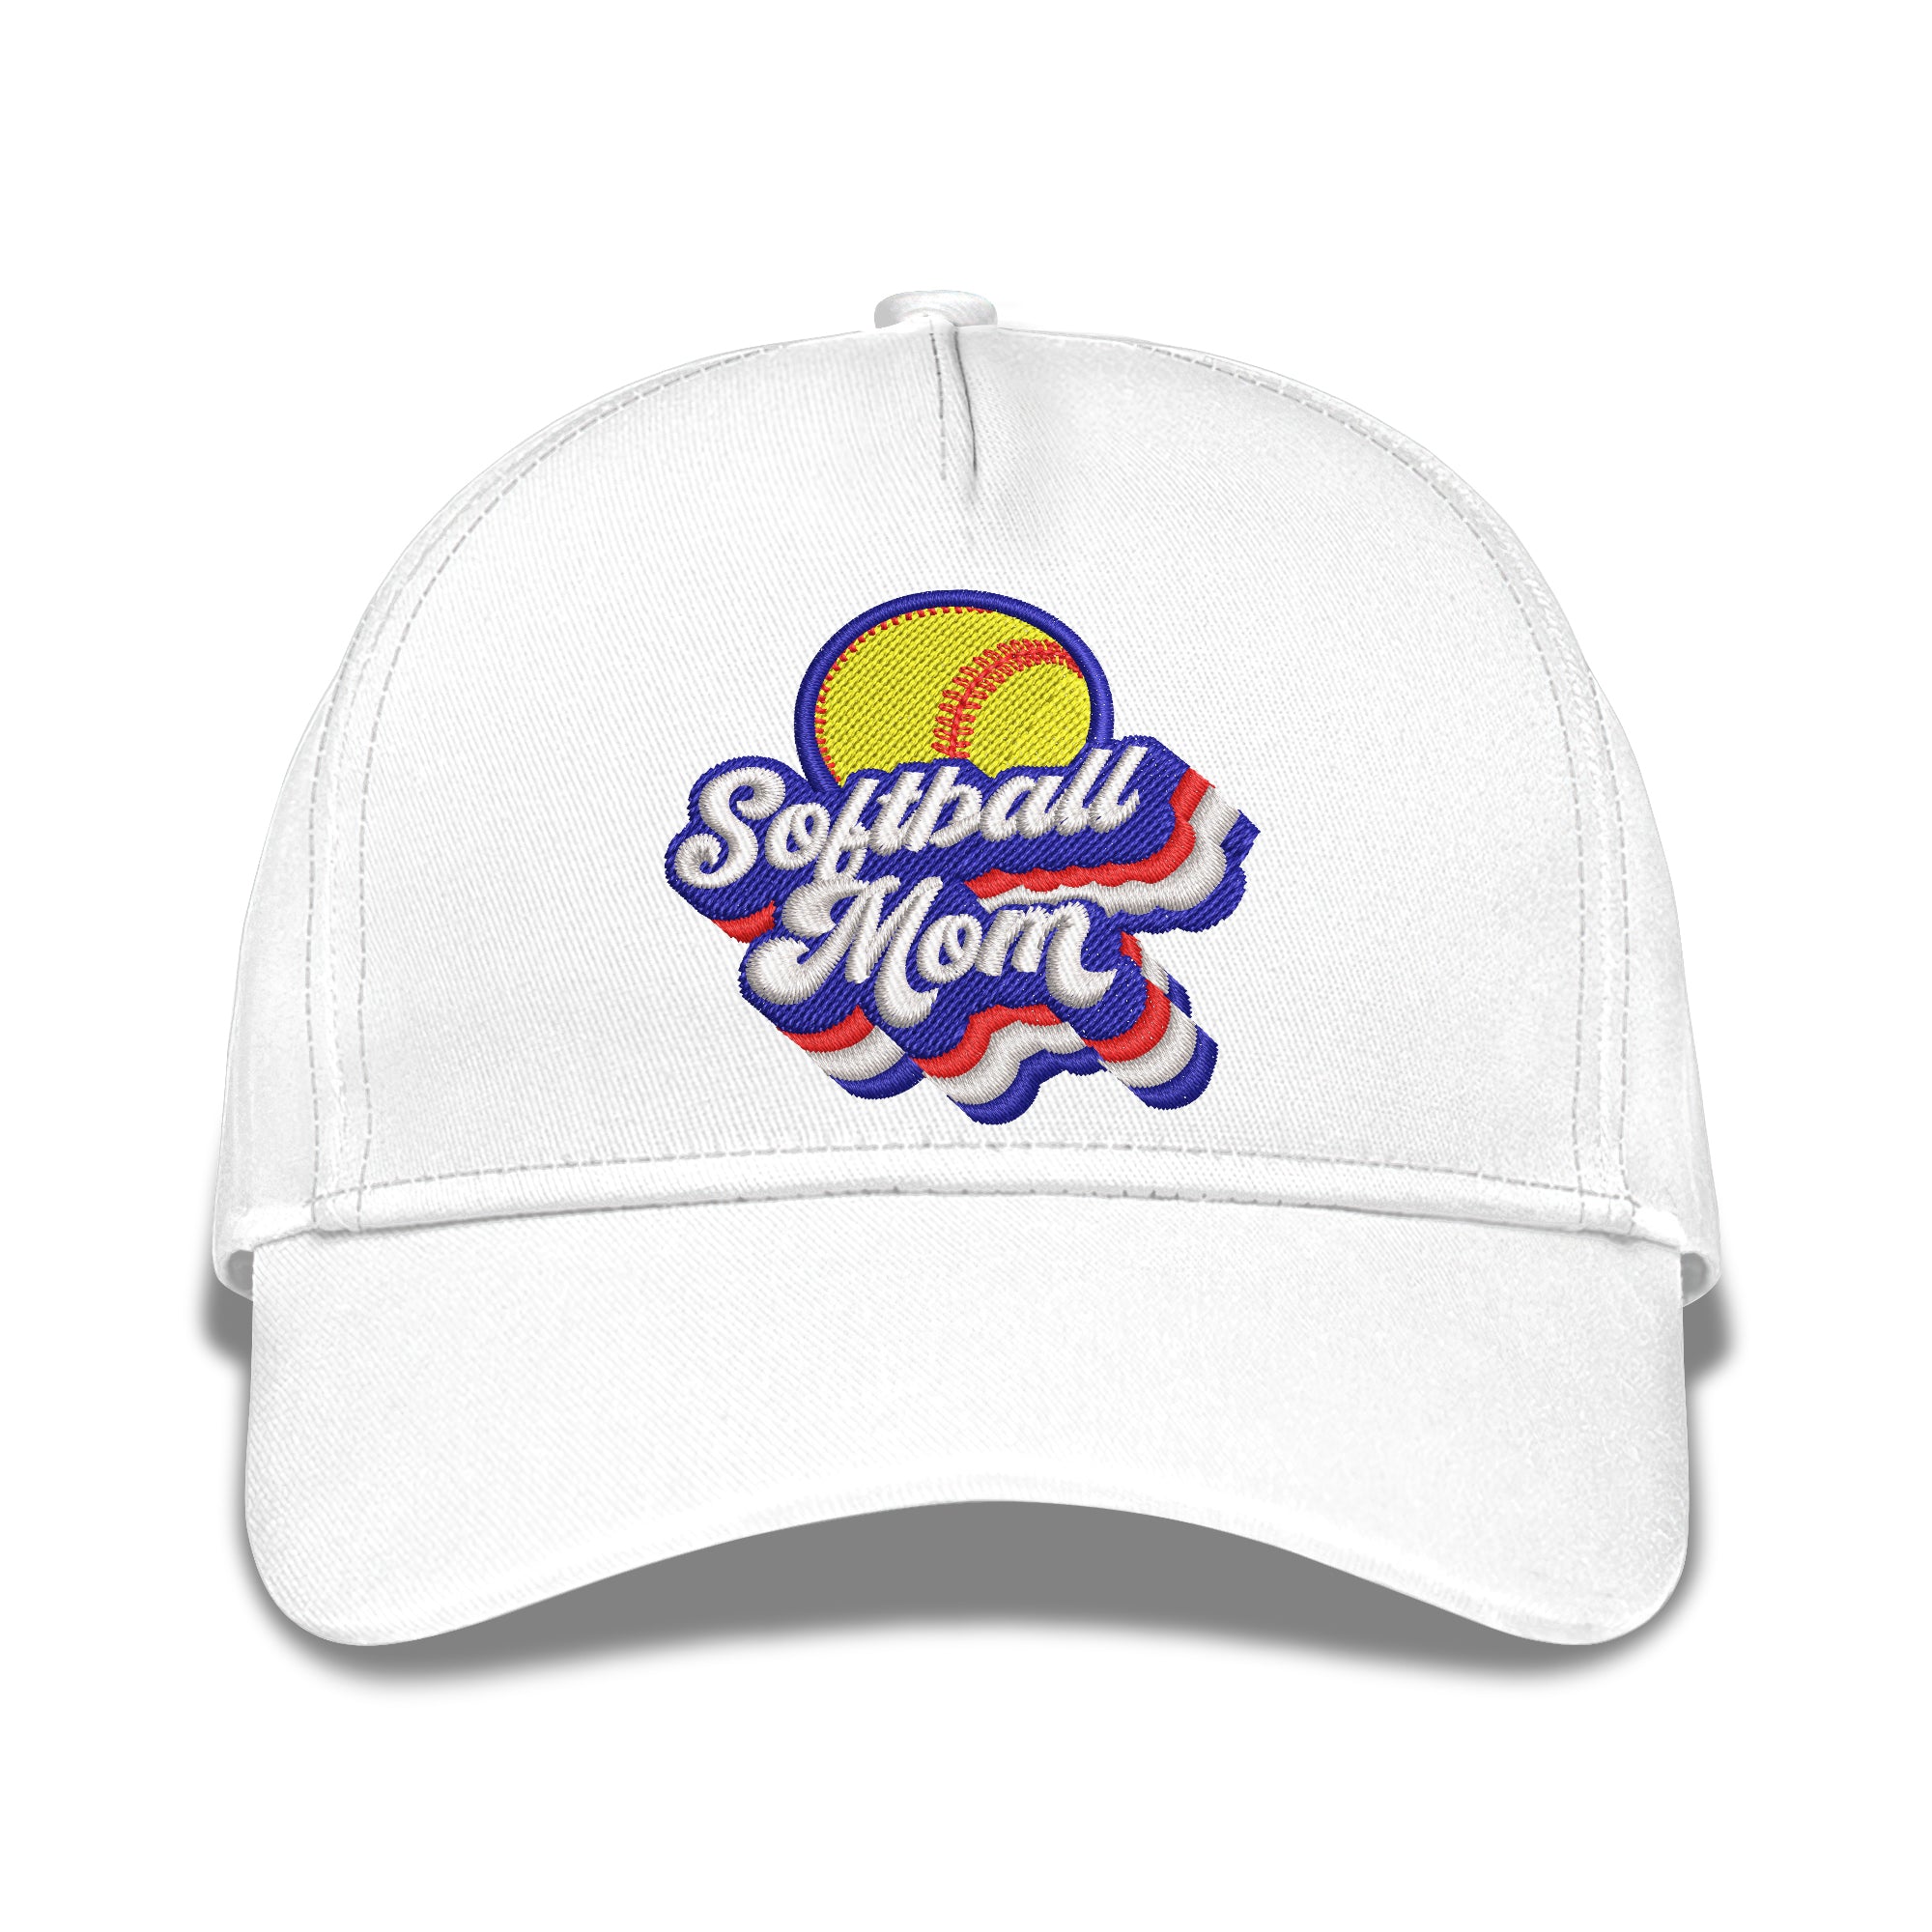 Softball Mom Embroidered Baseball Caps